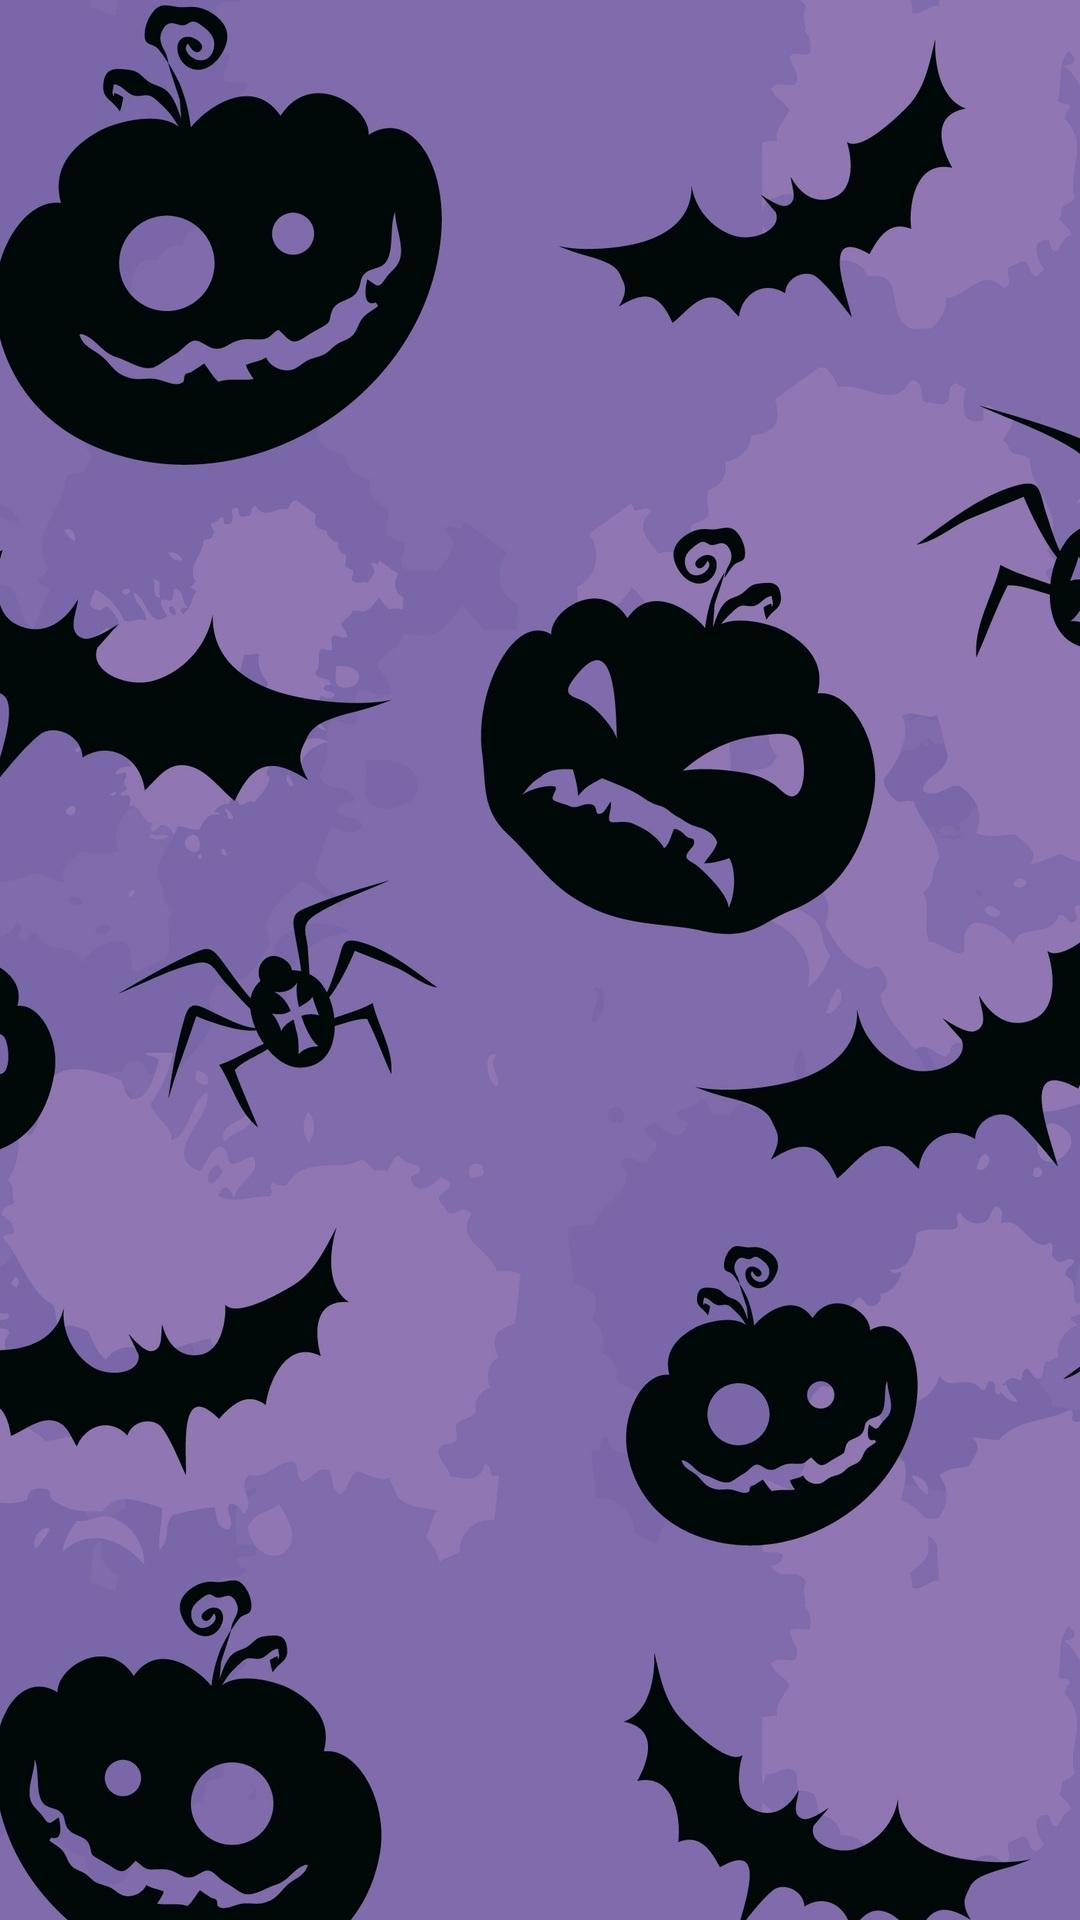 creepy, pumpkin, bats and spiders, textures